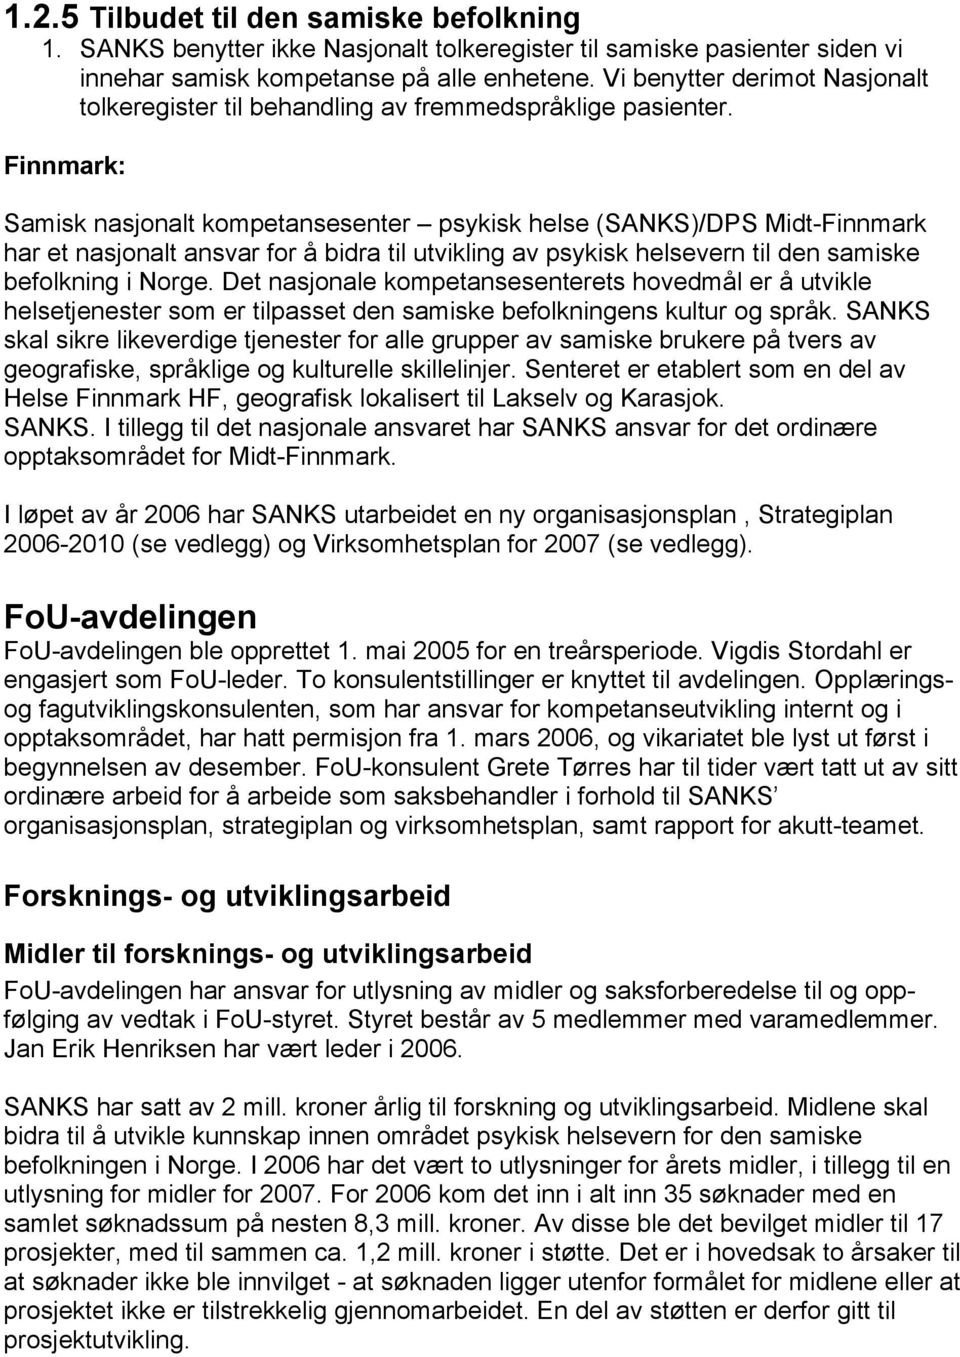 Finnmark: Samisk nasjonalt kompetansesenter psykisk helse (SANKS)/DPS Midt-Finnmark har et nasjonalt ansvar for å bidra til utvikling av psykisk helsevern til den samiske befolkning i Norge.